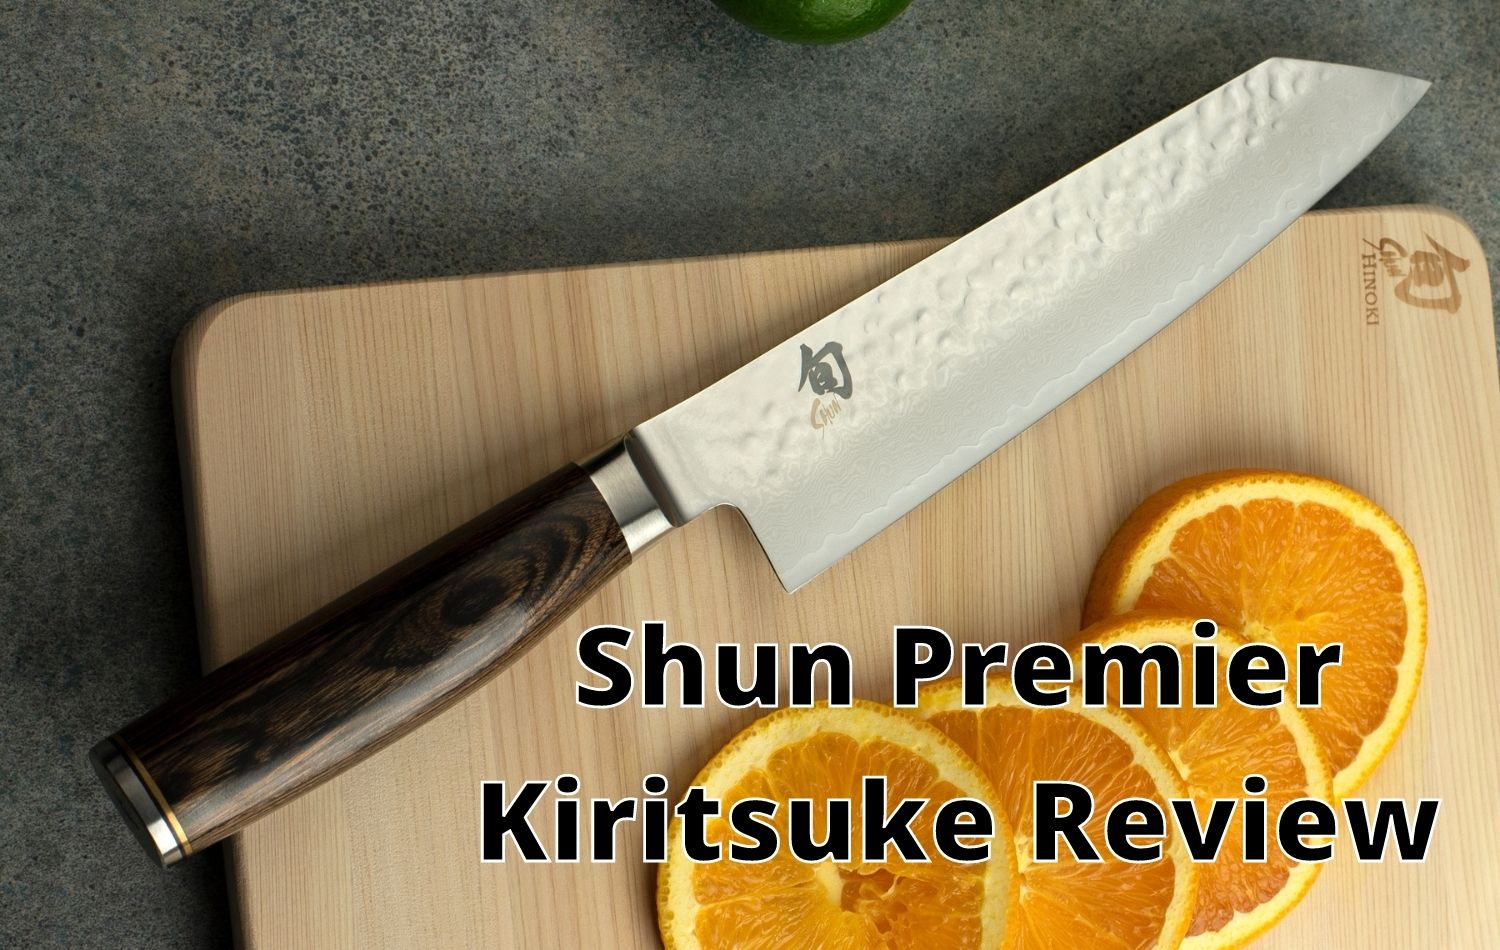 Shun Premier Kiritsuke Review